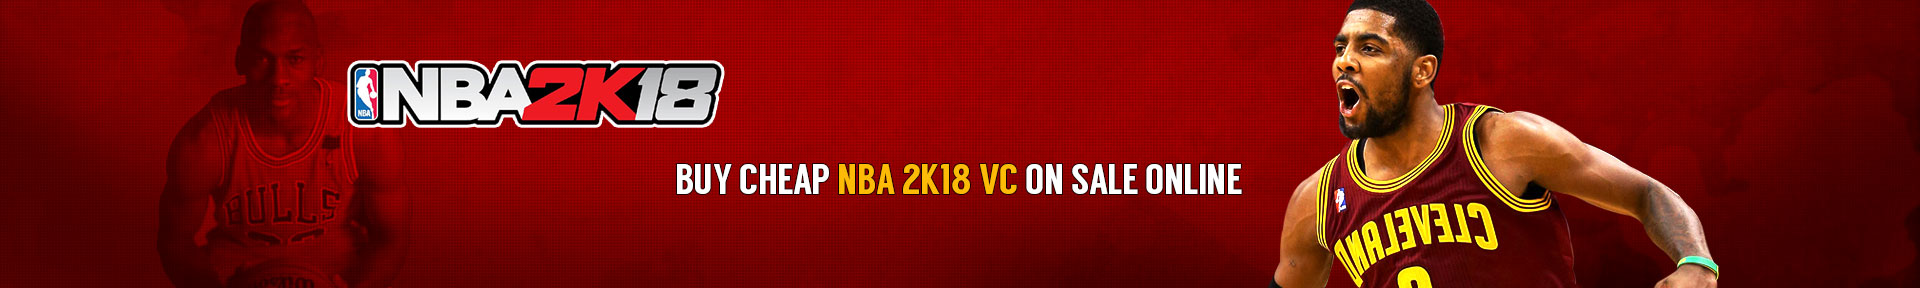 NBA 2K18 VC